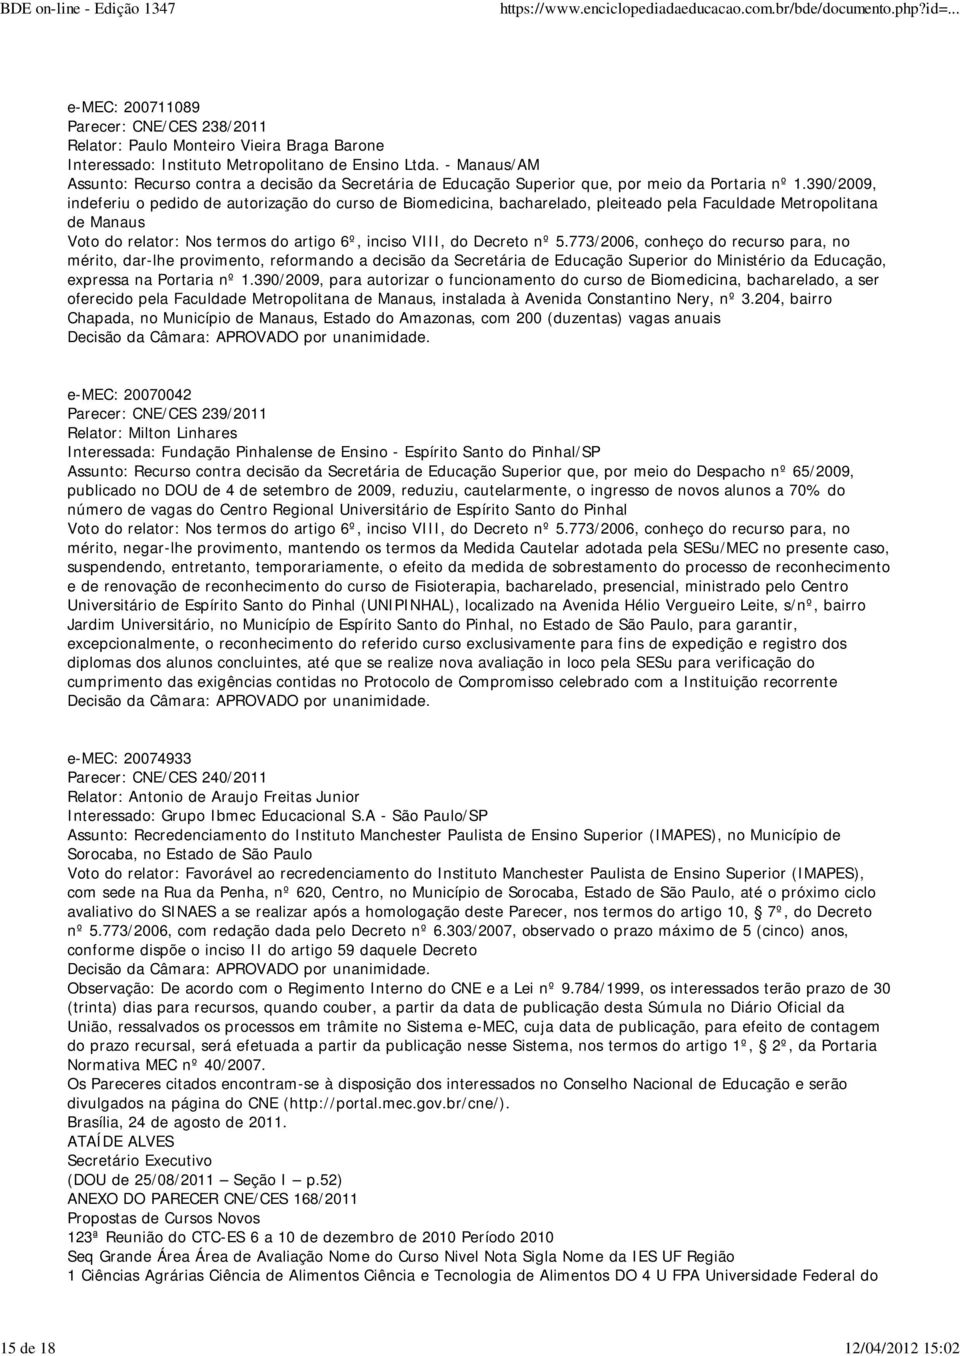 390/2009, indeferiu o pedido de autorização do curso de Biomedicina, bacharelado, pleiteado pela Faculdade Metropolitana de Manaus Voto do relator: Nos termos do artigo 6º, inciso VIII, do Decreto nº